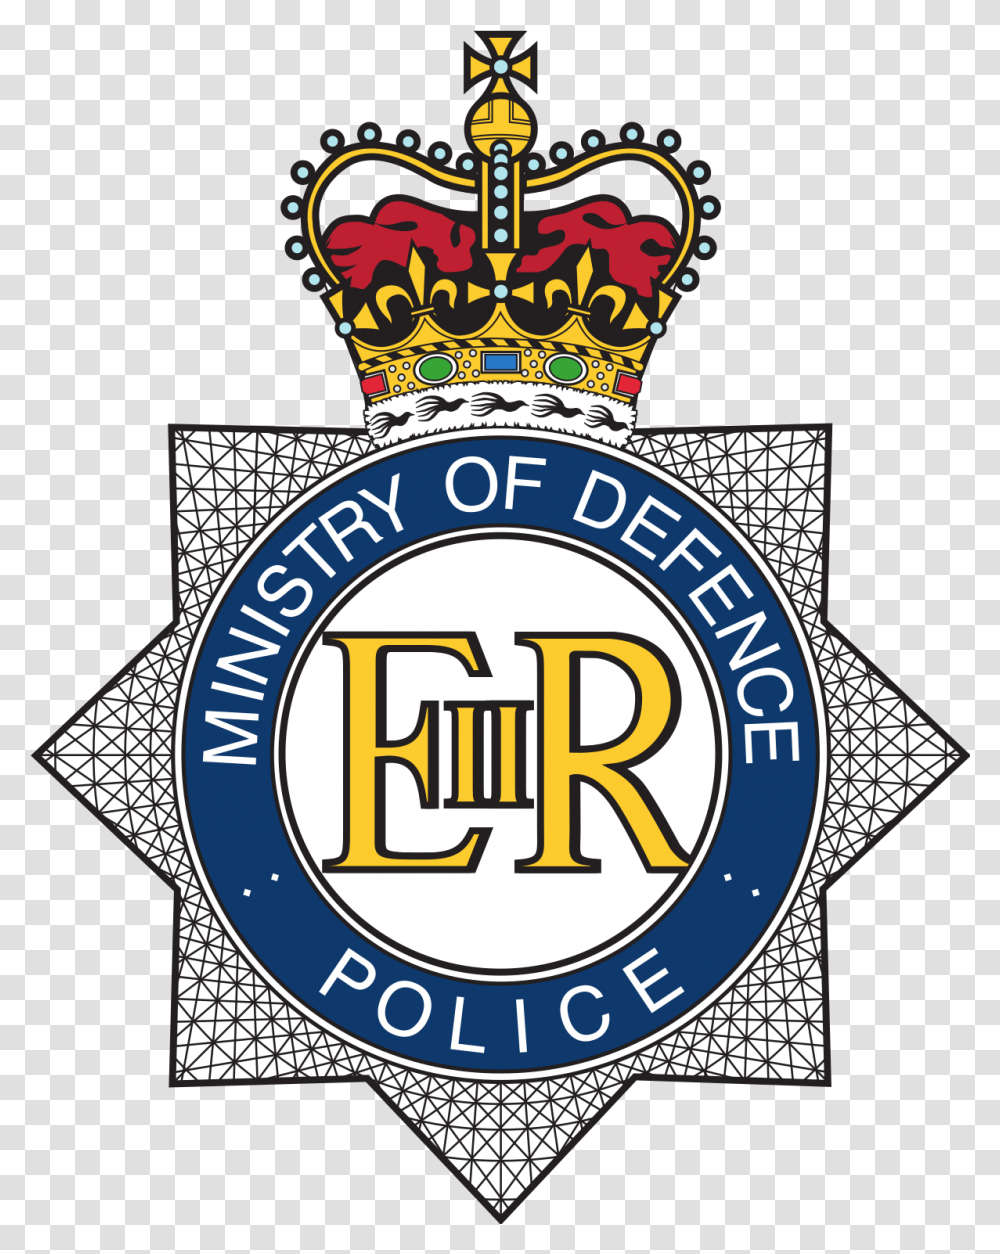 Ministry Of Defence Police Mod Police Logo, Symbol, Trademark, Badge, Emblem Transparent Png